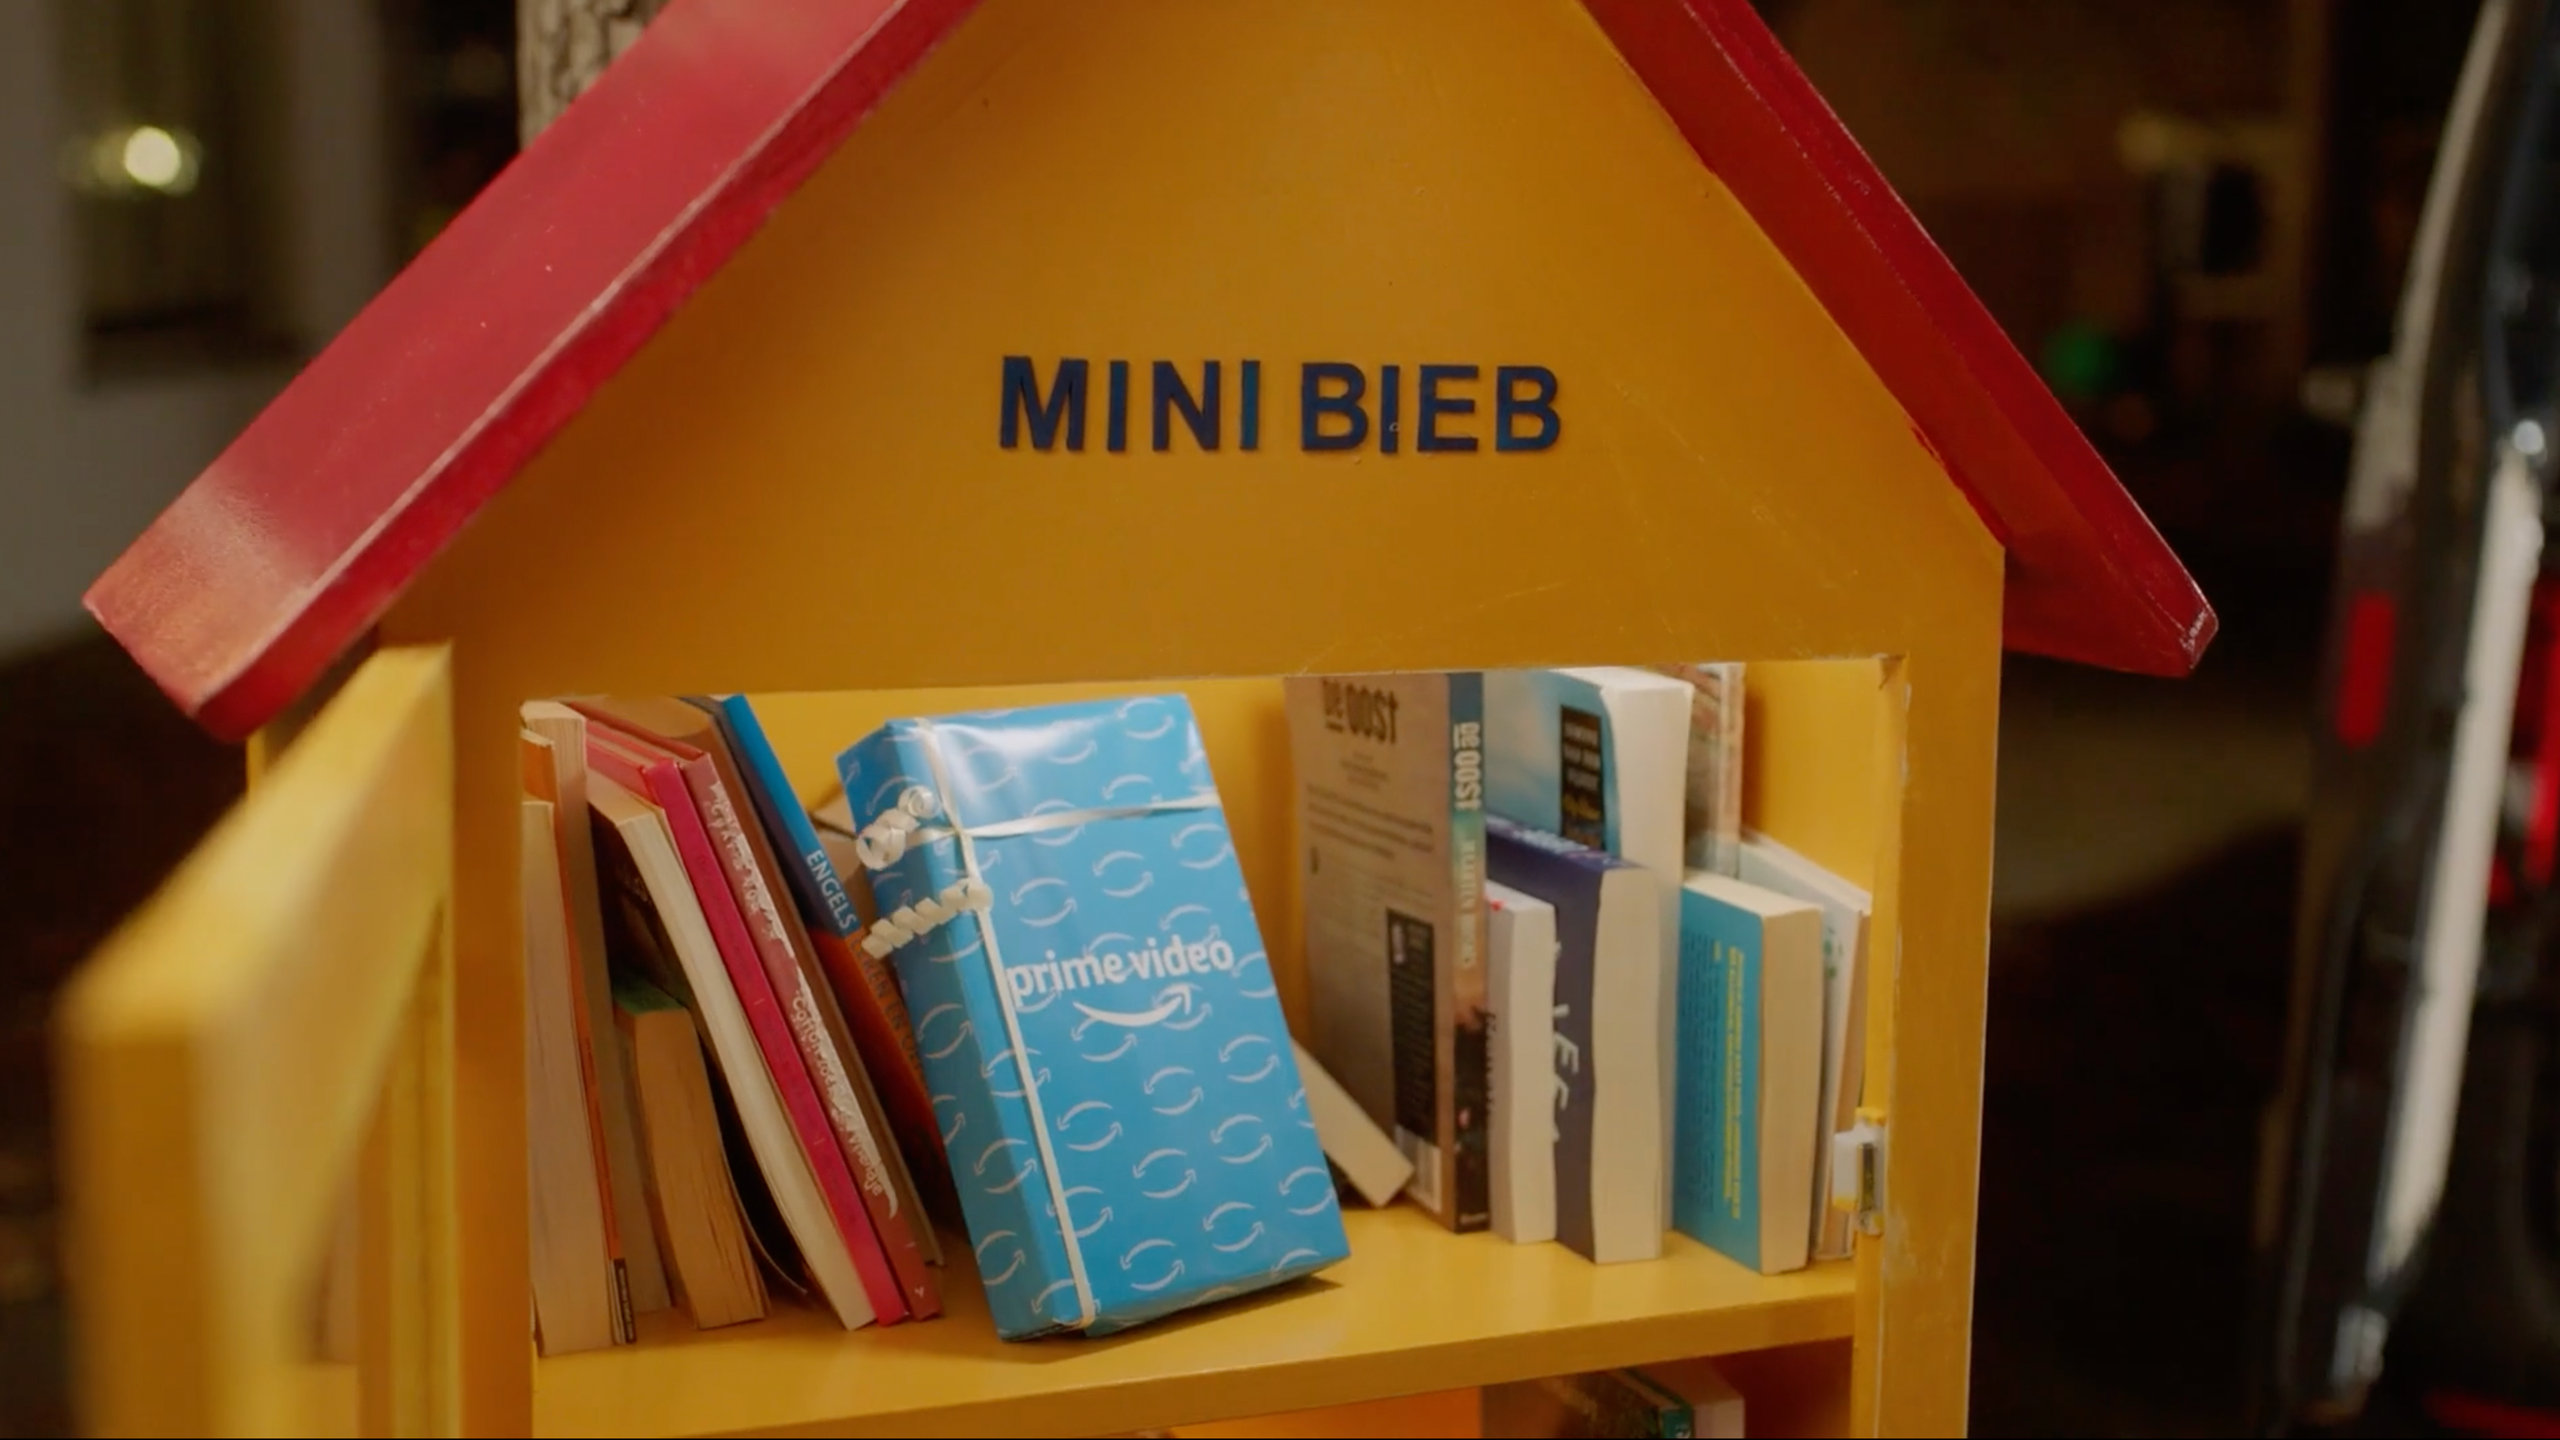 Prime Video zet cadeaus in minibiebs door het hele land